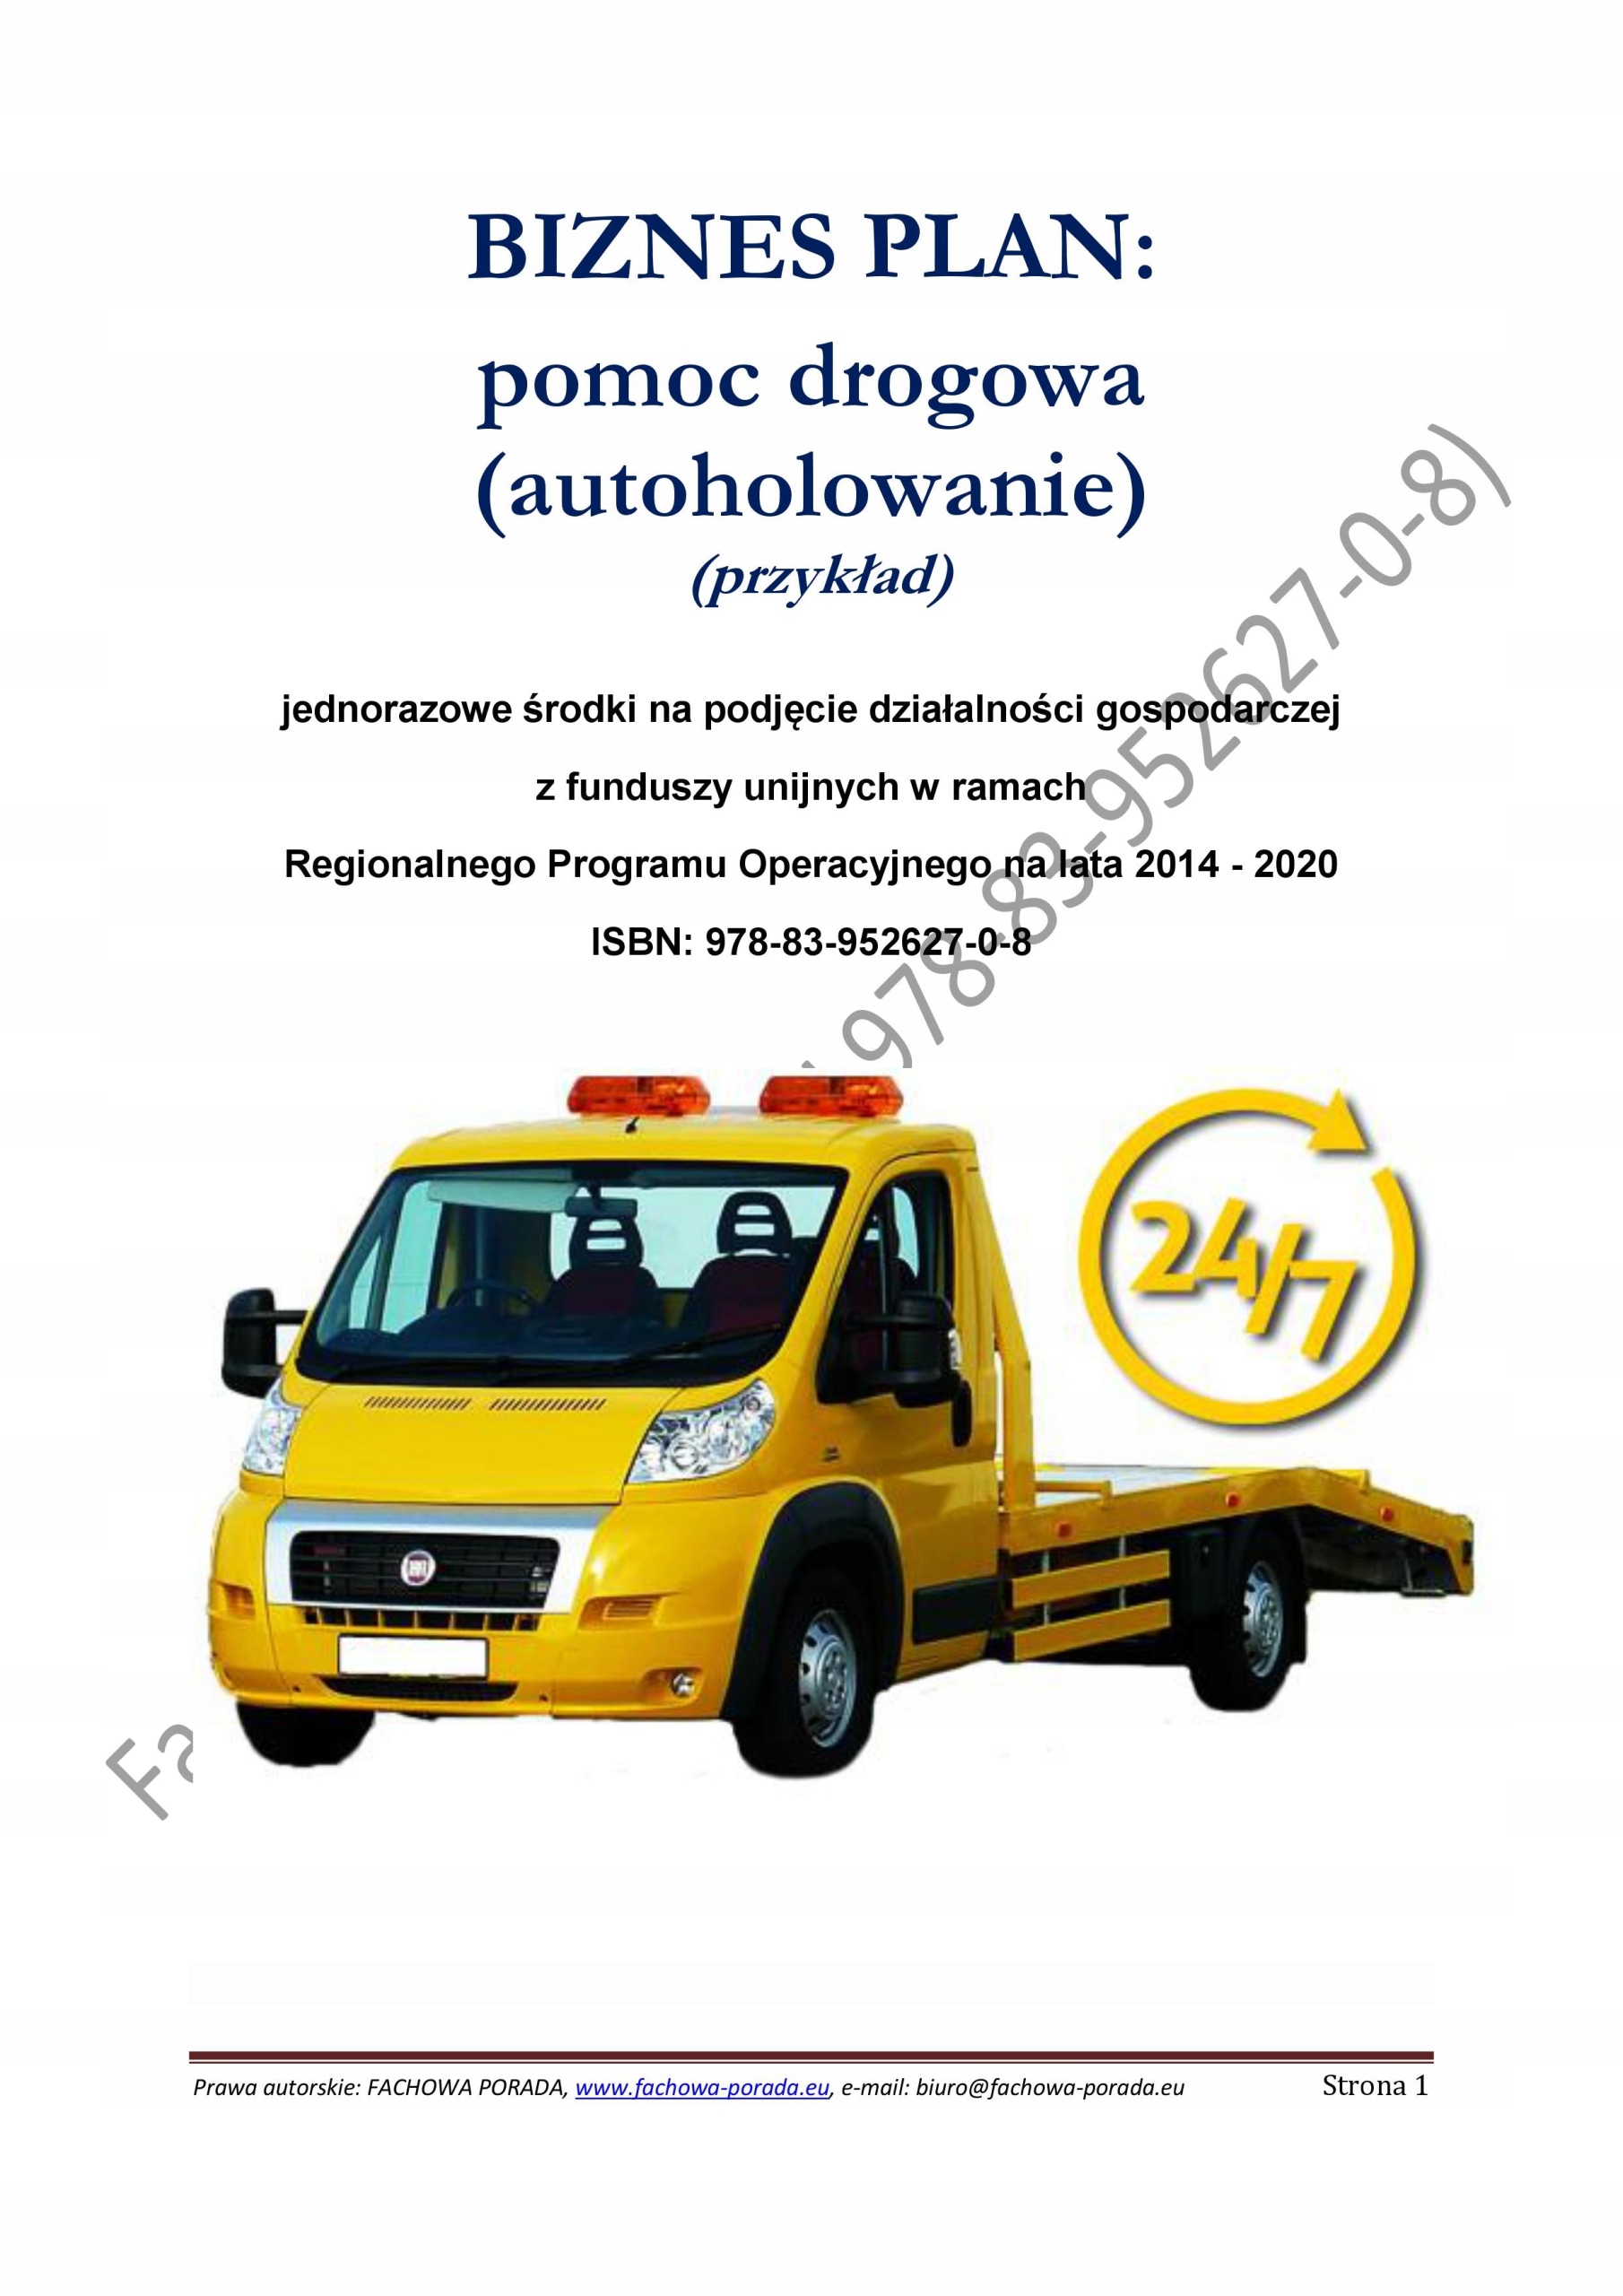 Biznesplan Pomoc Drogowa (Autoholowanie) 2 - 34,90 Zł - Allegro.pl - Raty 0%, Darmowa Dostawa Ze Smart! - Serock - Id Oferty: 7623546916